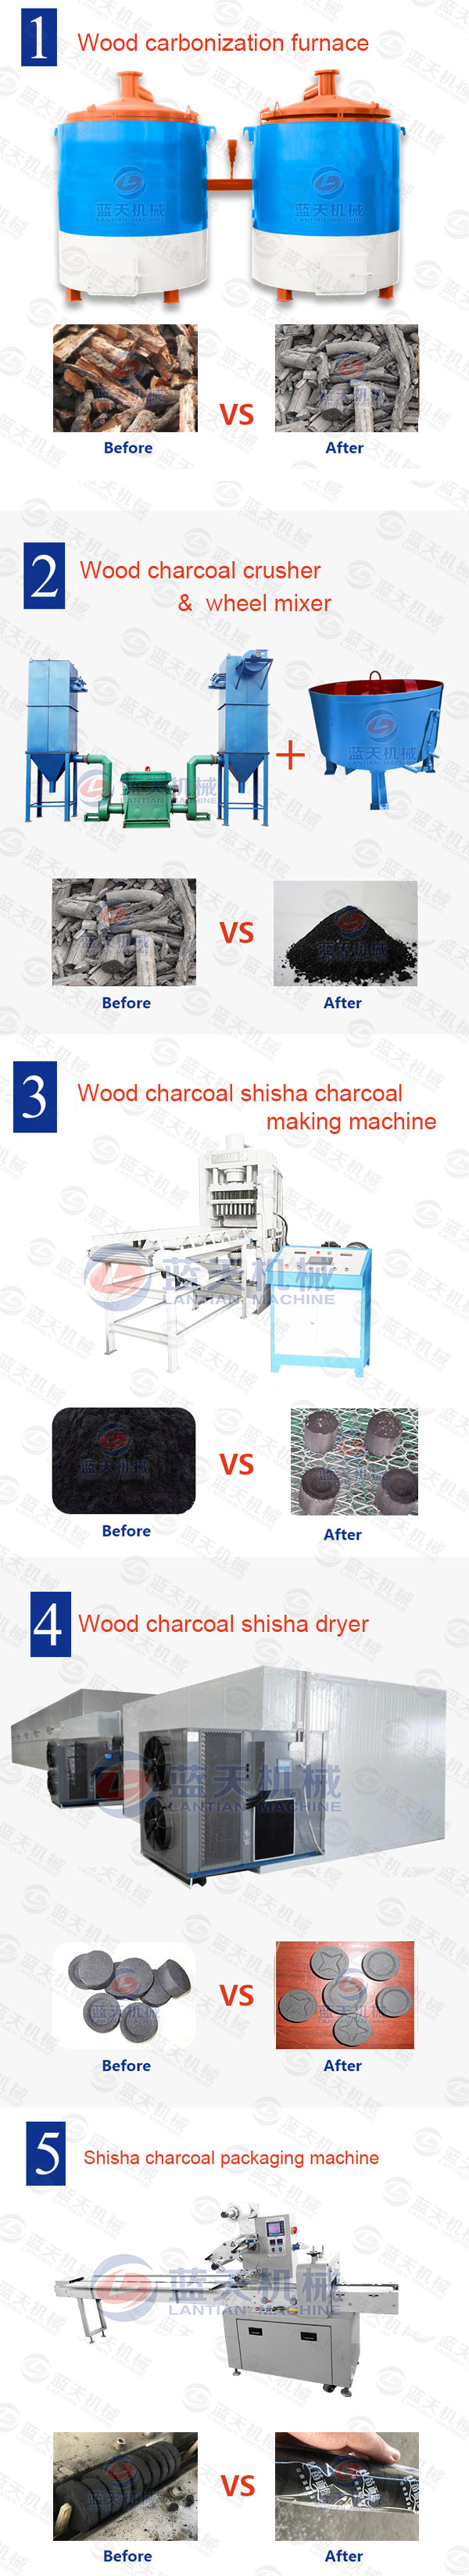 wood charcoal shisha charcoal machine